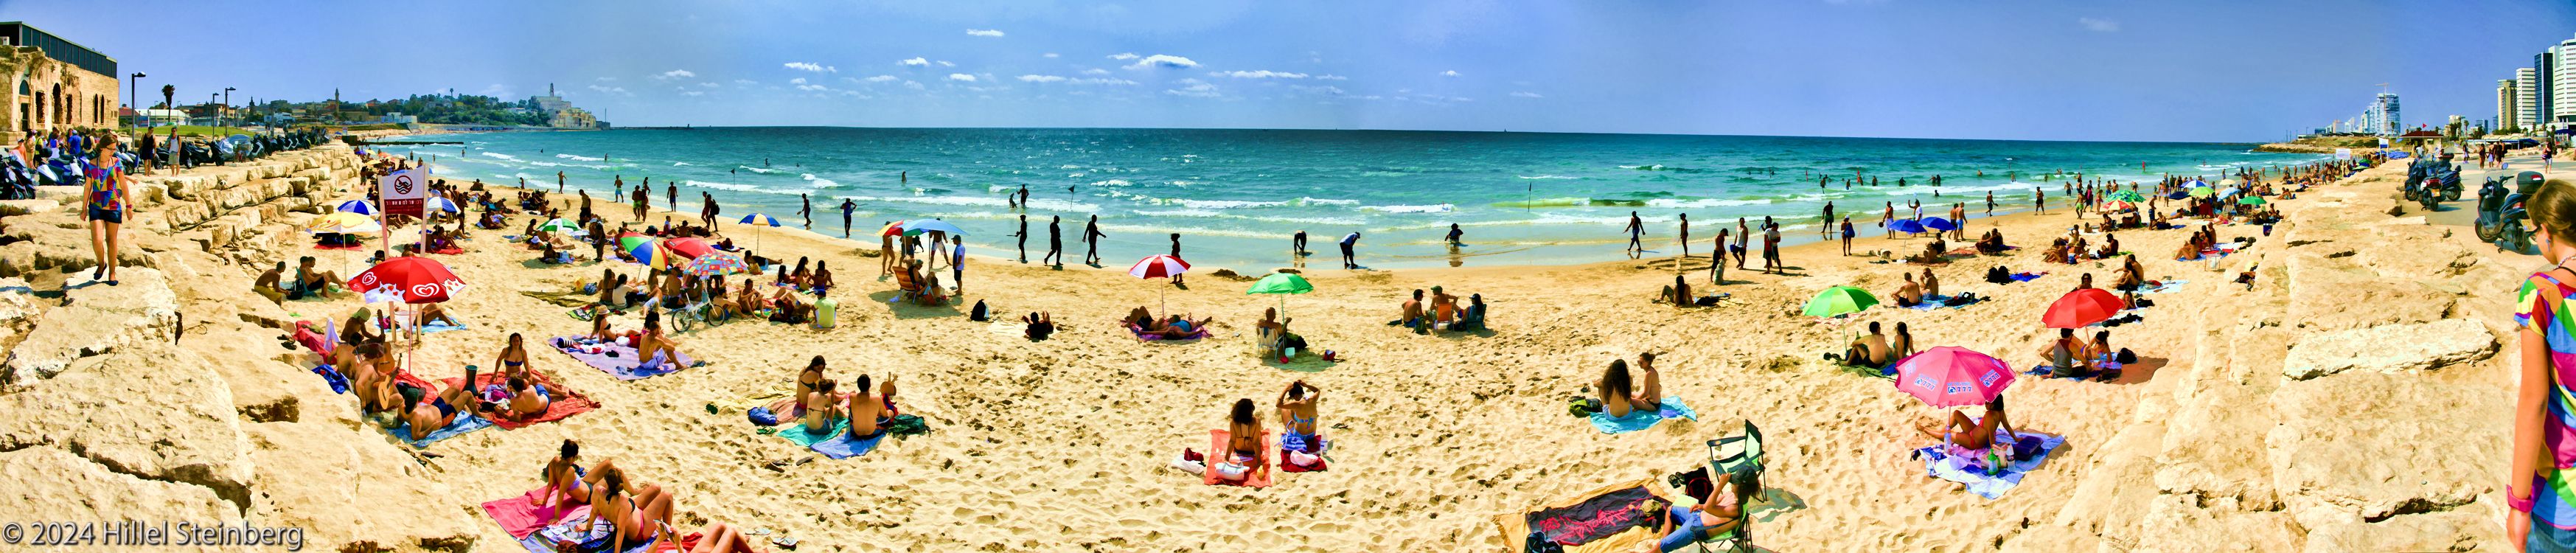 Panorama of Tel-Aviv's Beach, Summer 2011